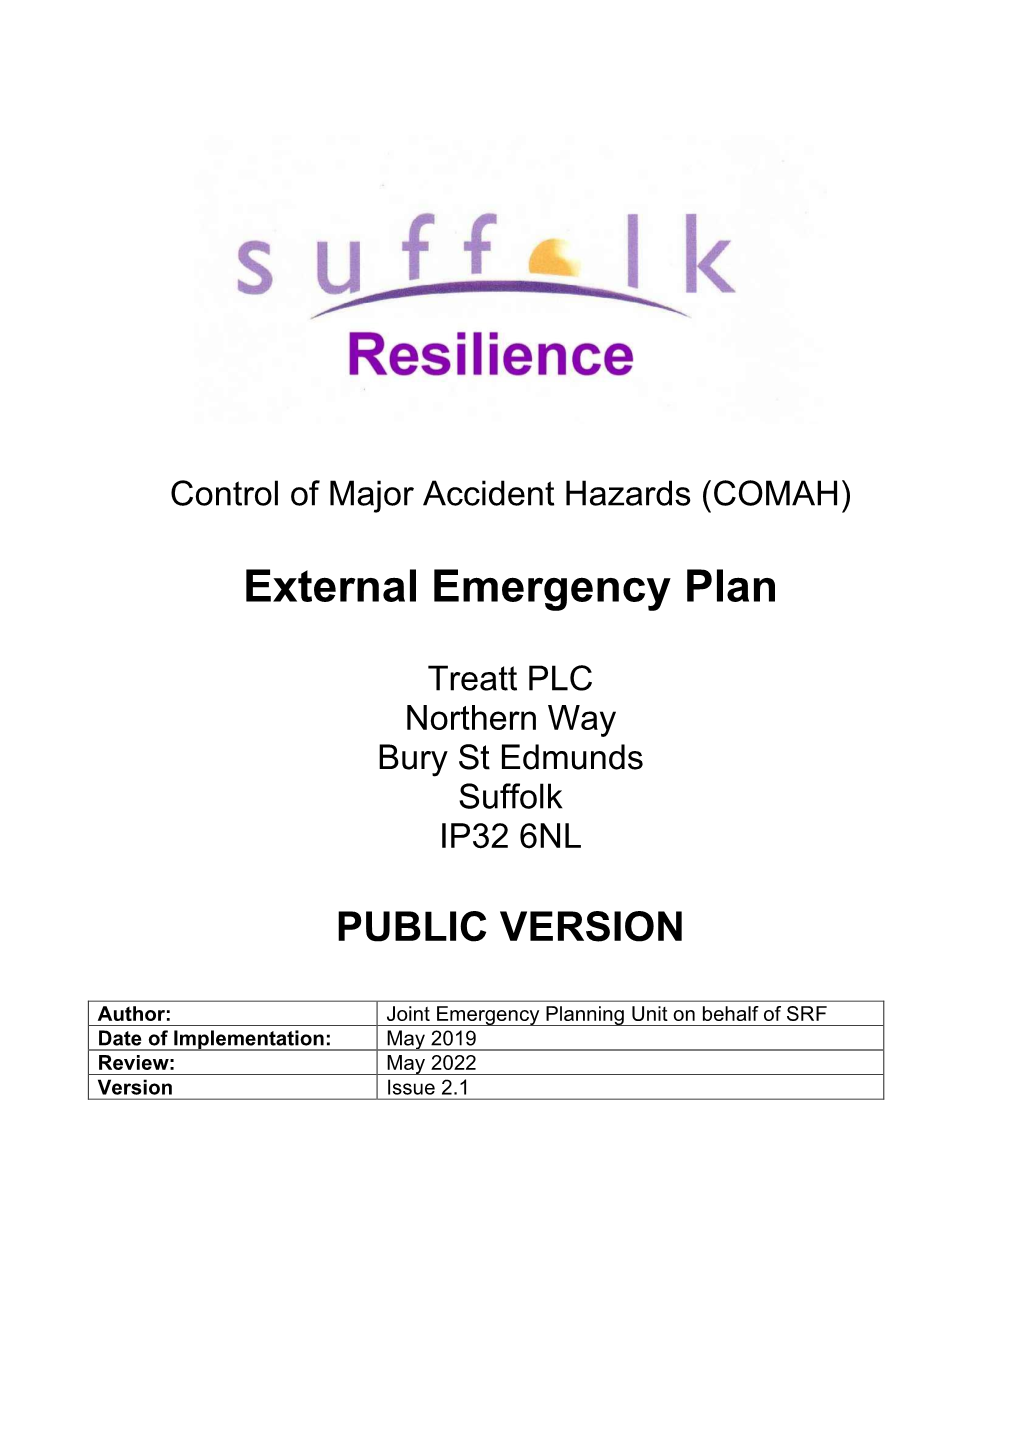 TREATT, Bury St Edmunds, External Emergency Plan